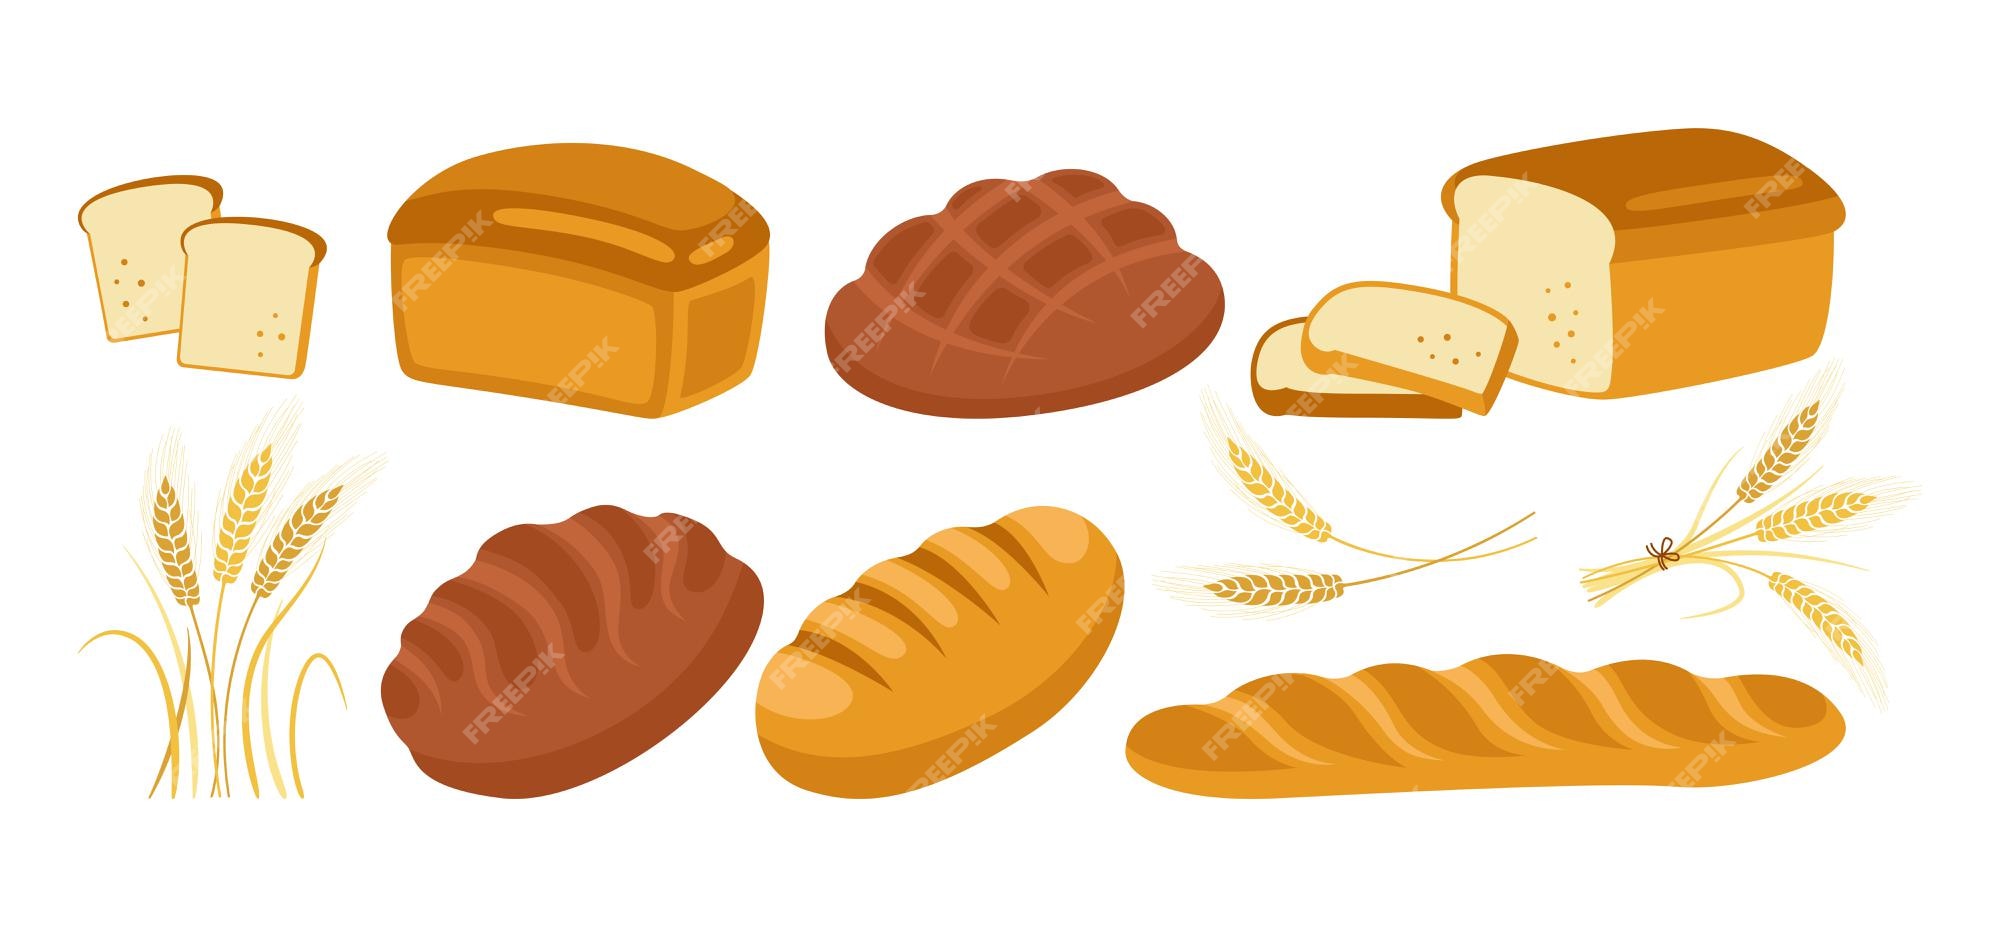 Conjunto de iconos de dibujos animados de pan. productos de panadería  hogaza de pan y espigas de trigo y baguette francés, pretzel, croissant,  ciabatta de baguette francés | Vector Premium